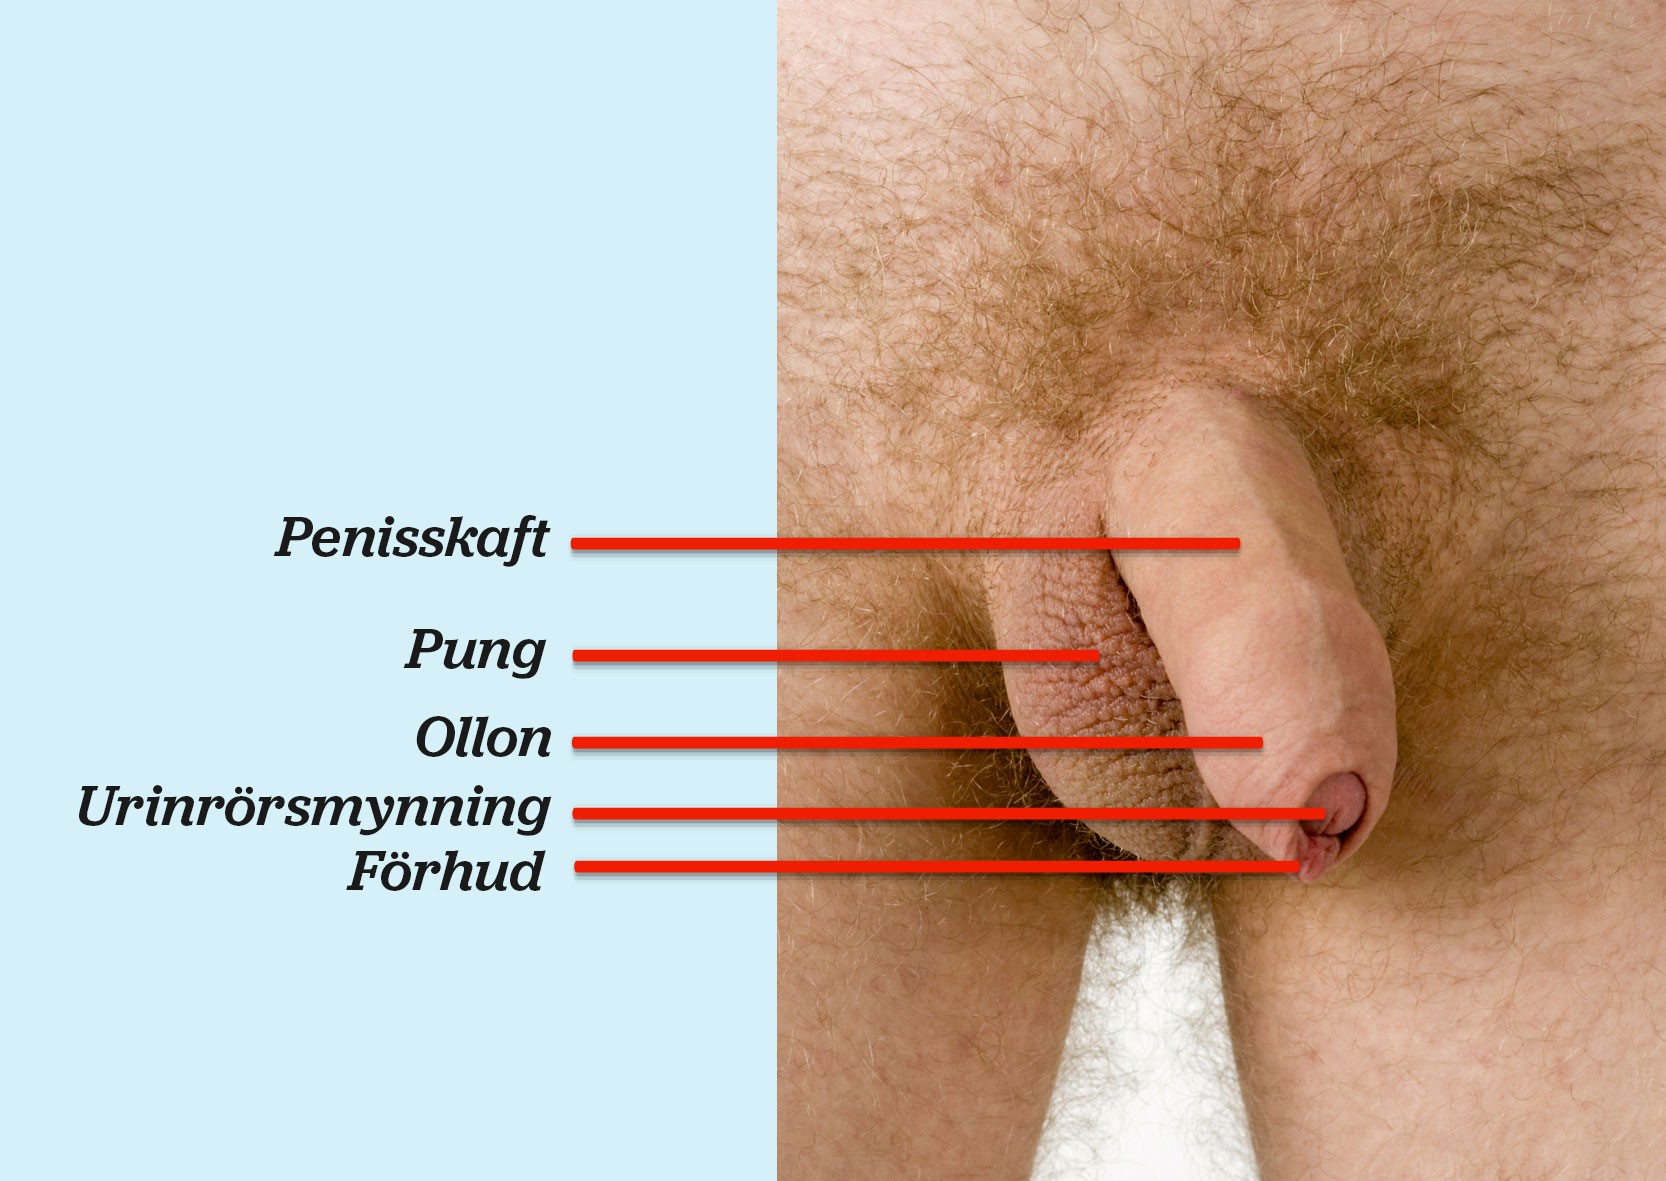 Fotografi av en penis med penisskaft, pung, ollon, urinrörsmynning och förhud utmärkt.